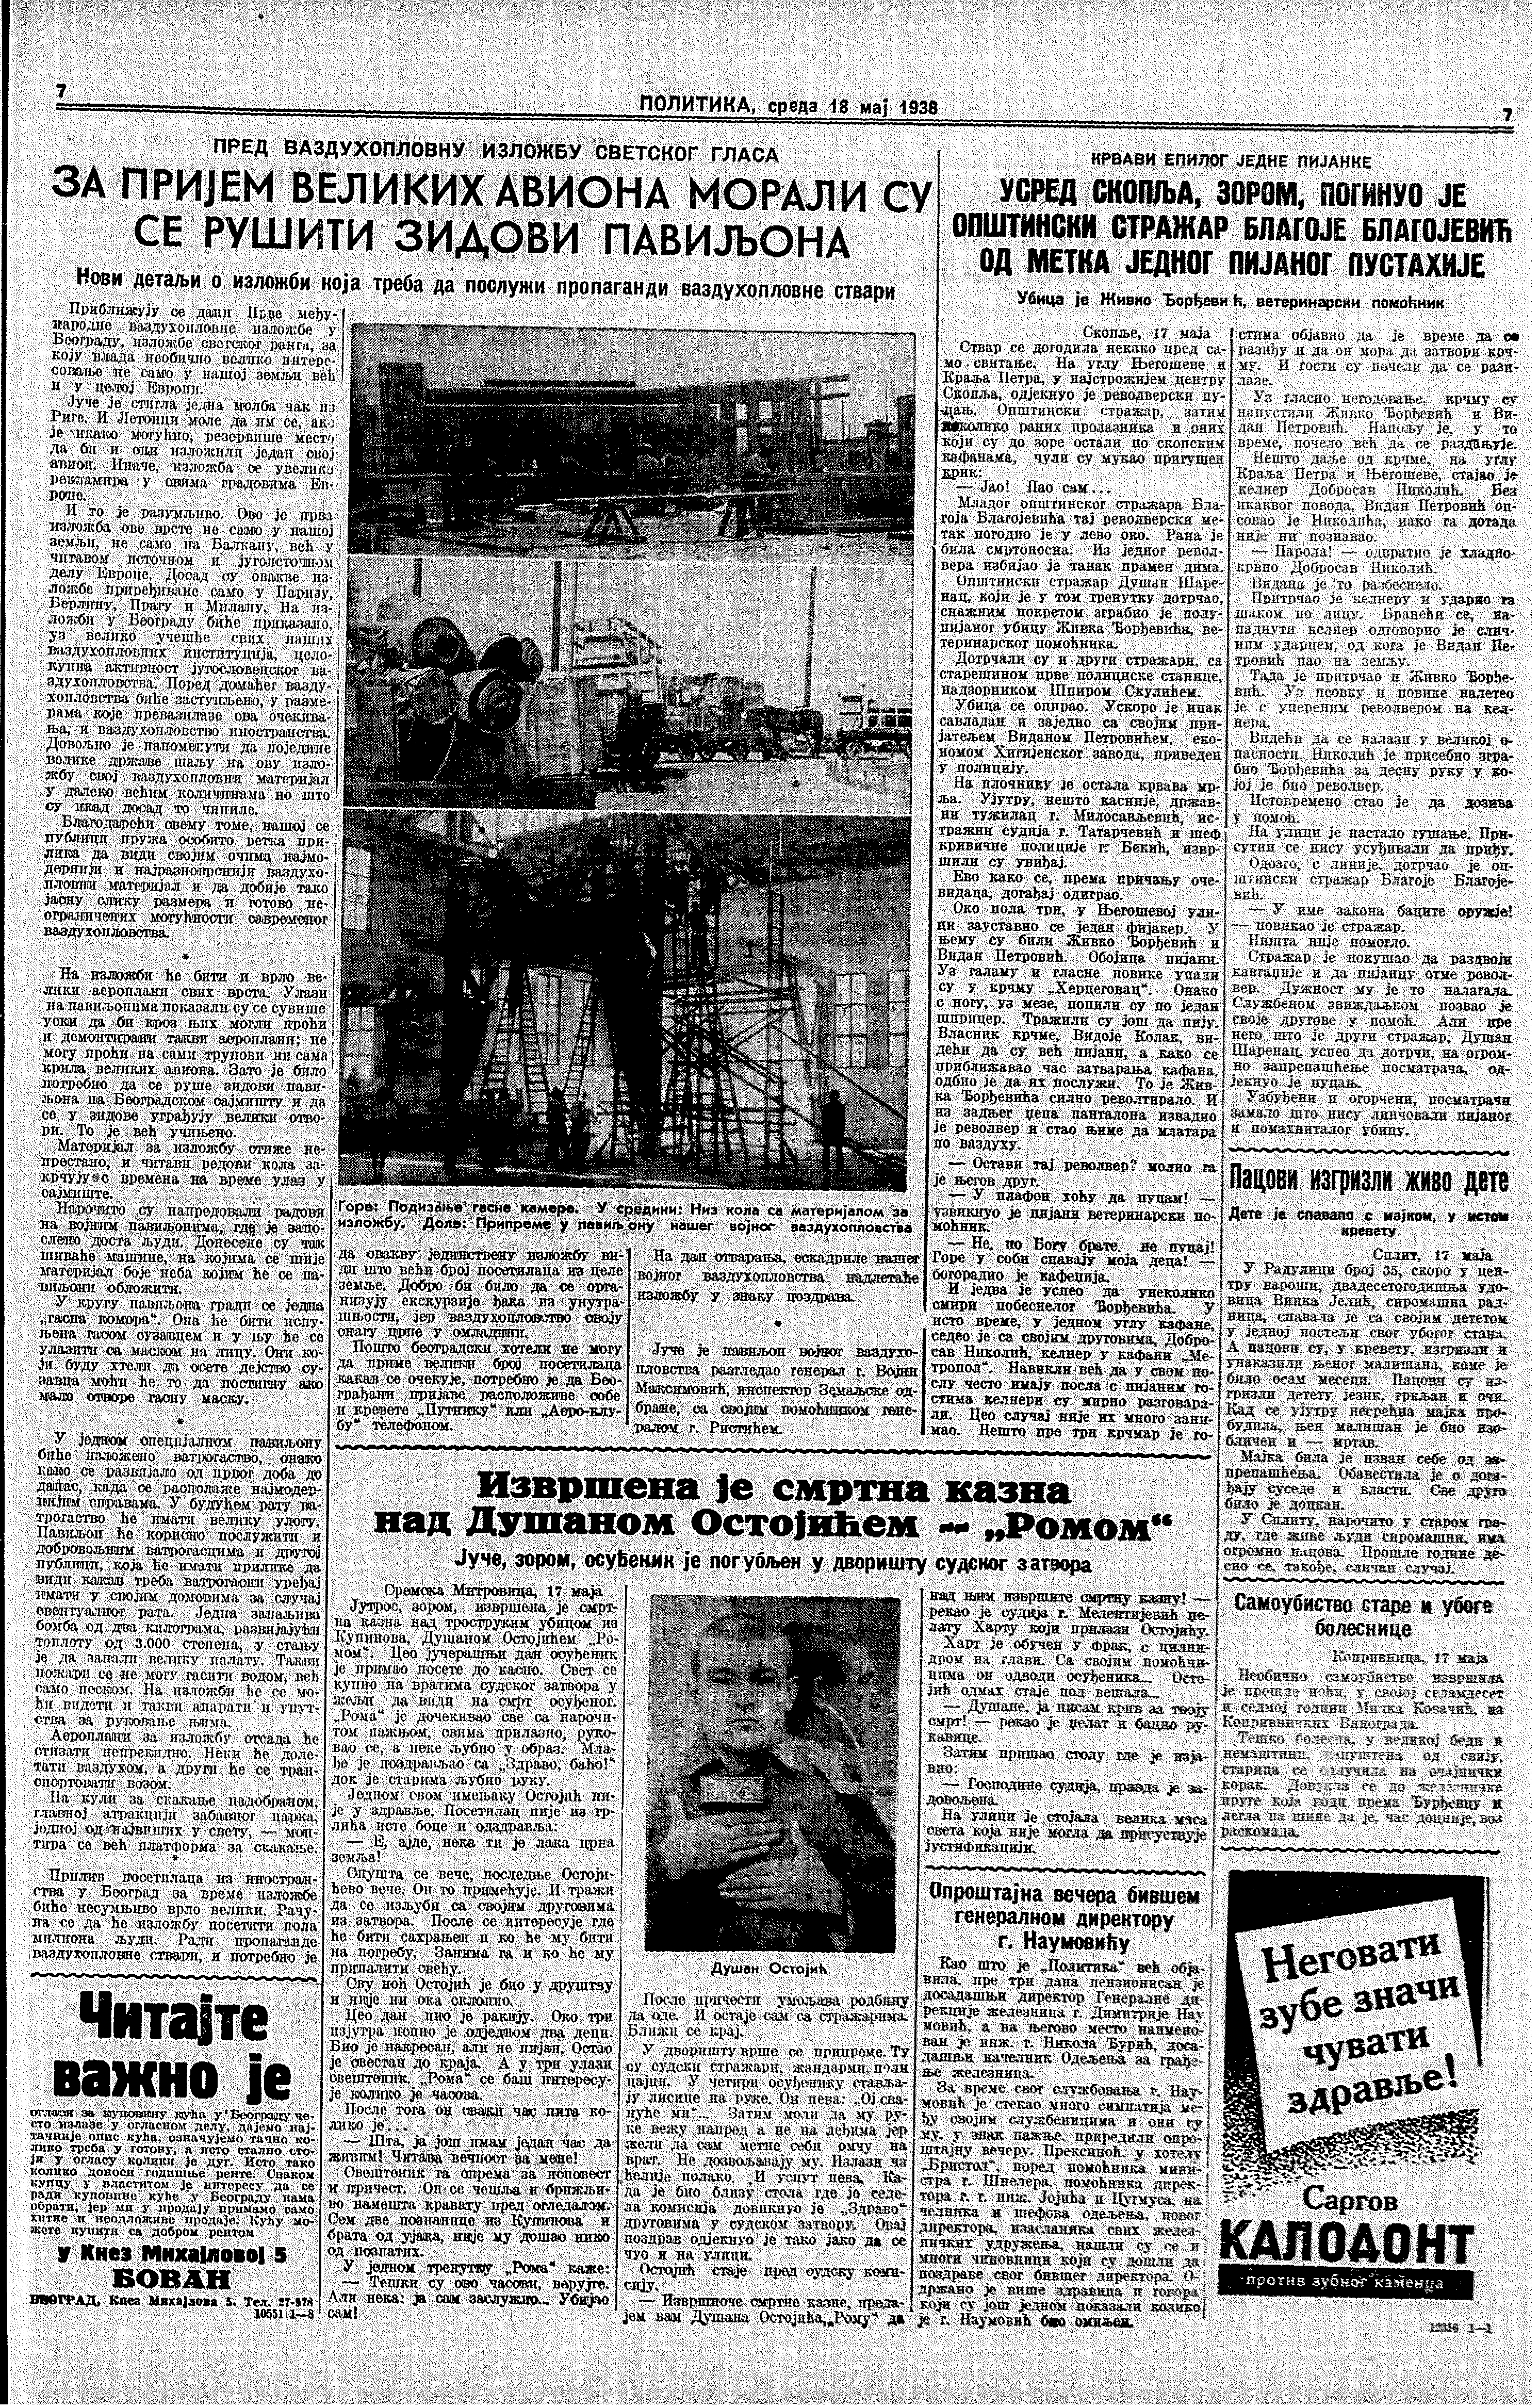 Izvršena je smrtna kazna, Politika, 18.05.1938